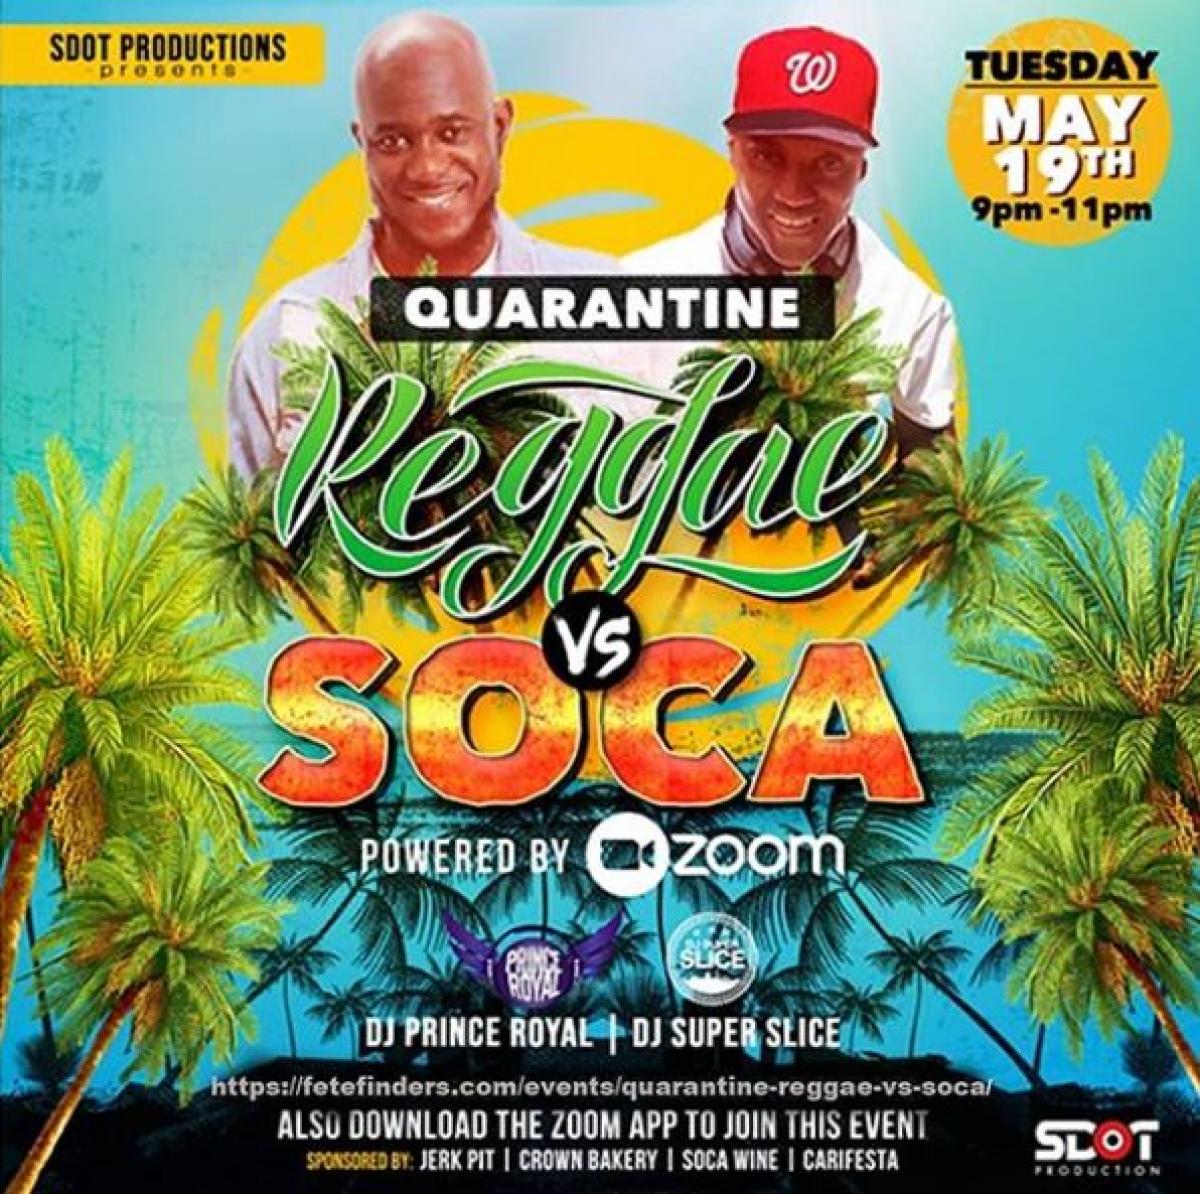 Quarantine Reggae Vs Soca flyer or graphic.